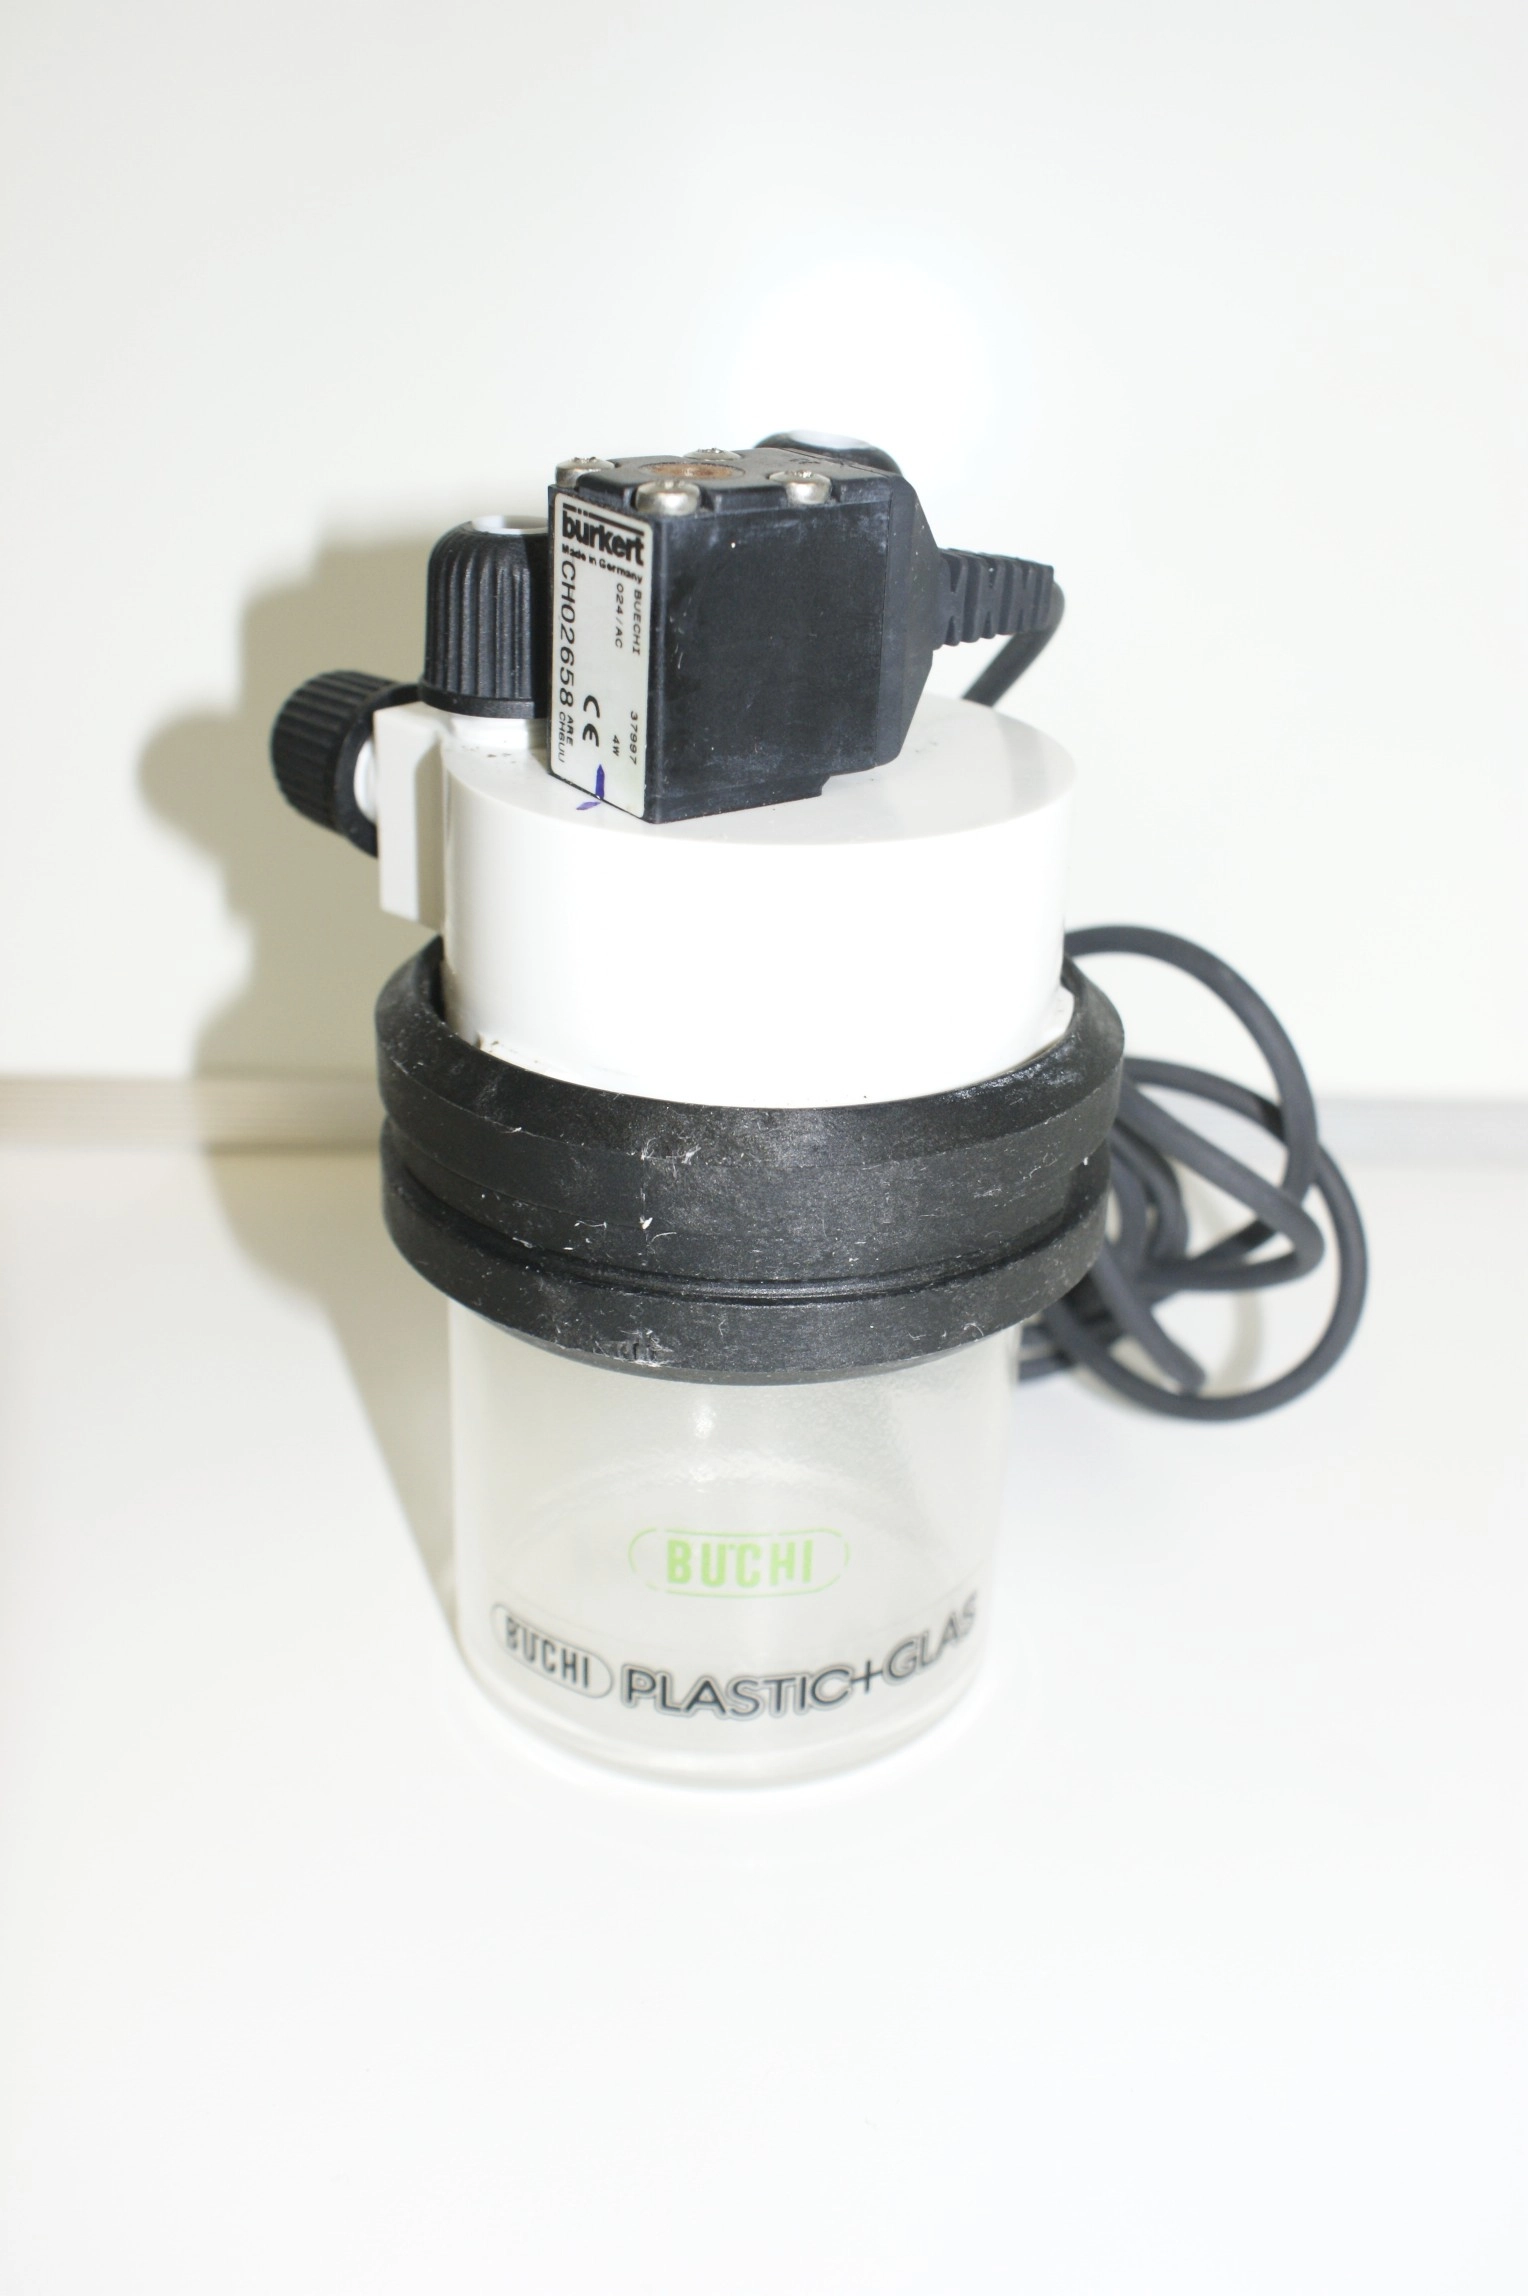 Buchi Vacuum Pump Glass Vessel Buchi 37997 Buchi Pressure Module used